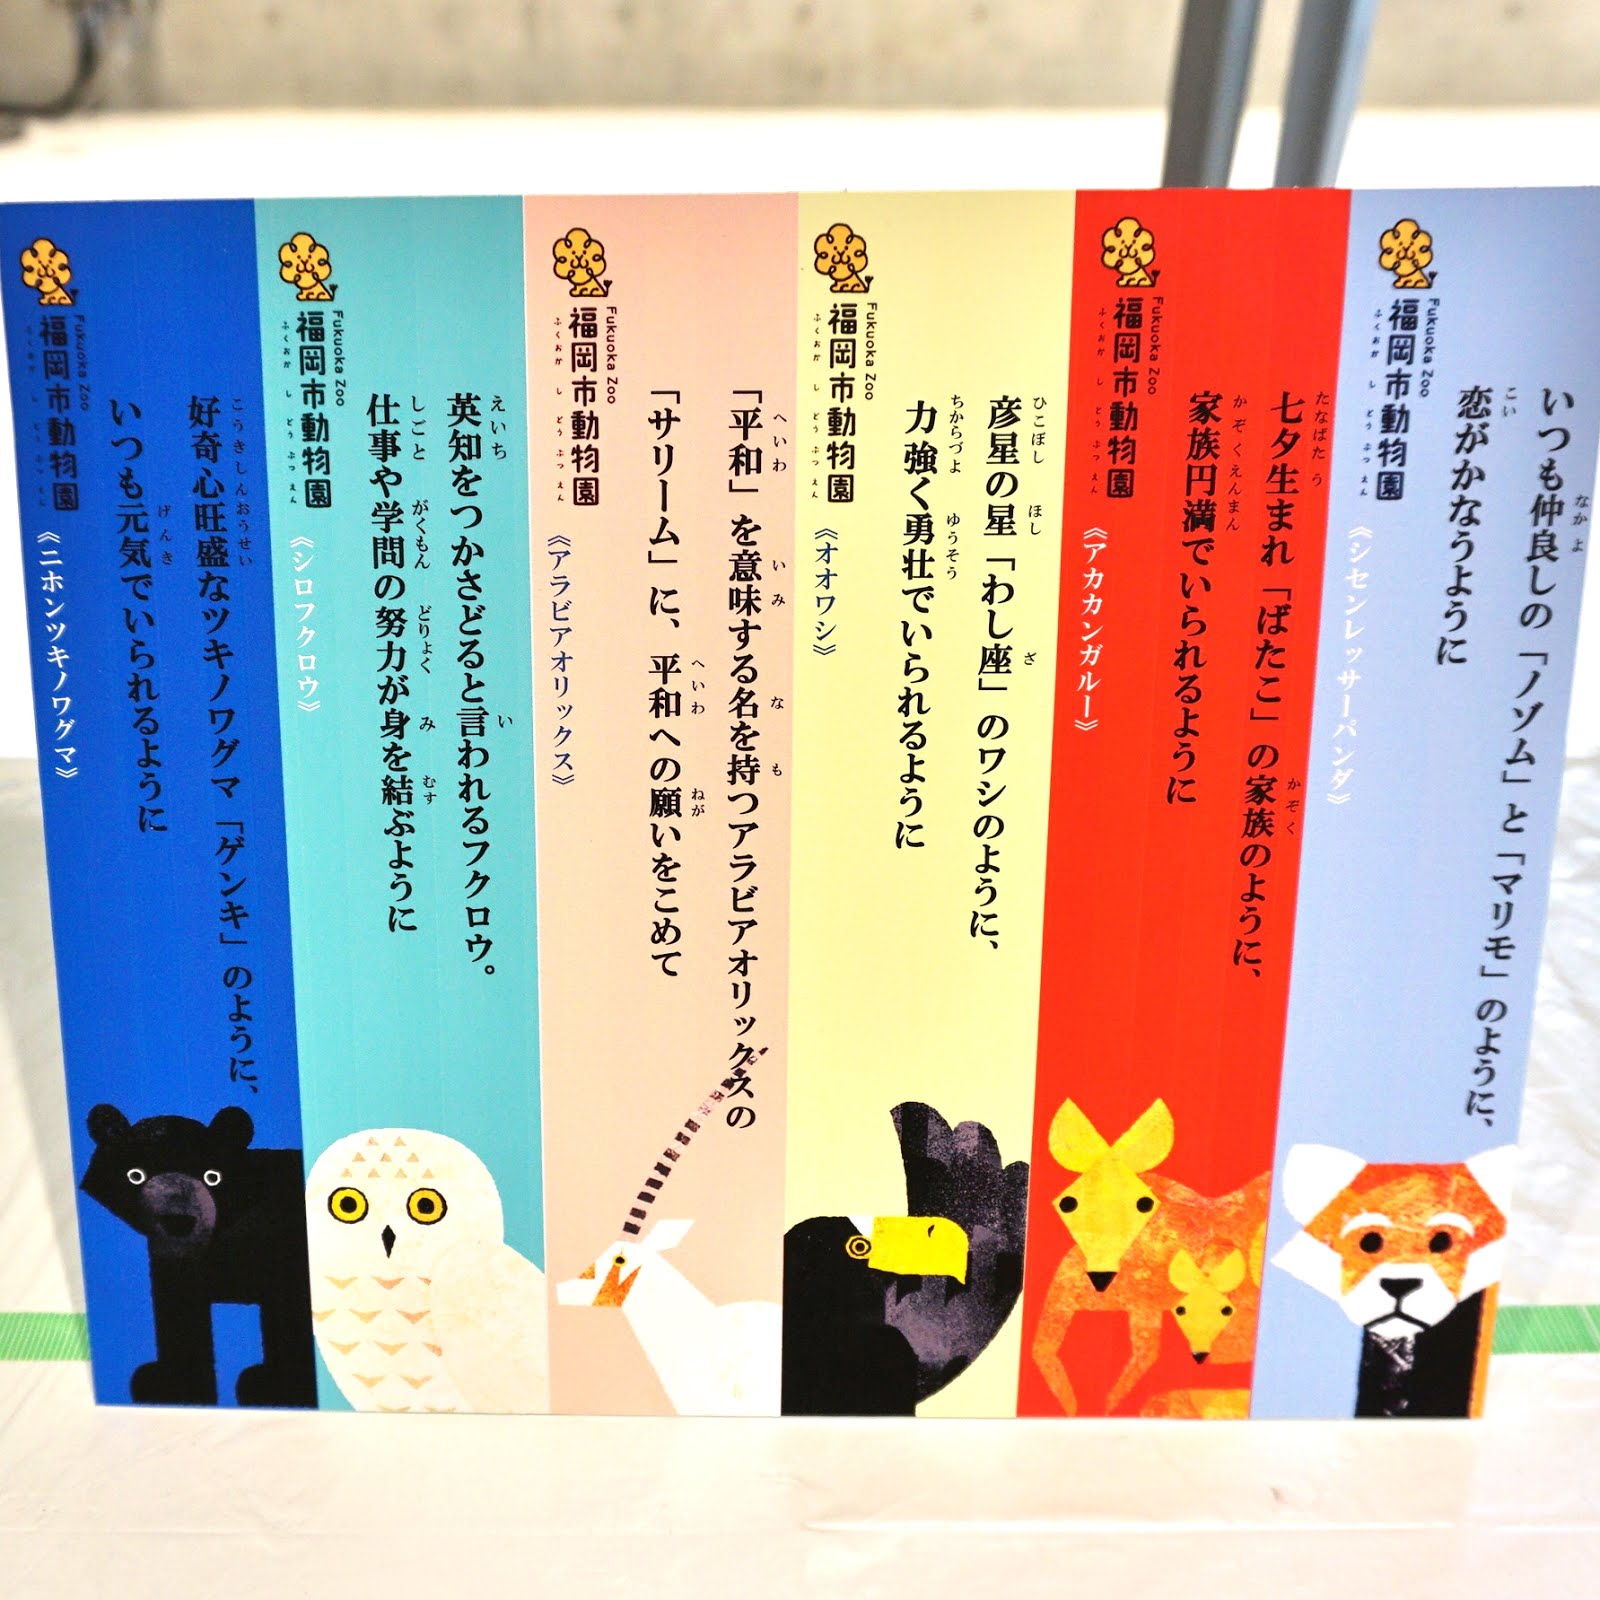 福岡市動物園ブログ 七夕どうぶつ笹飾り カブトムシ講演会のお知らせ